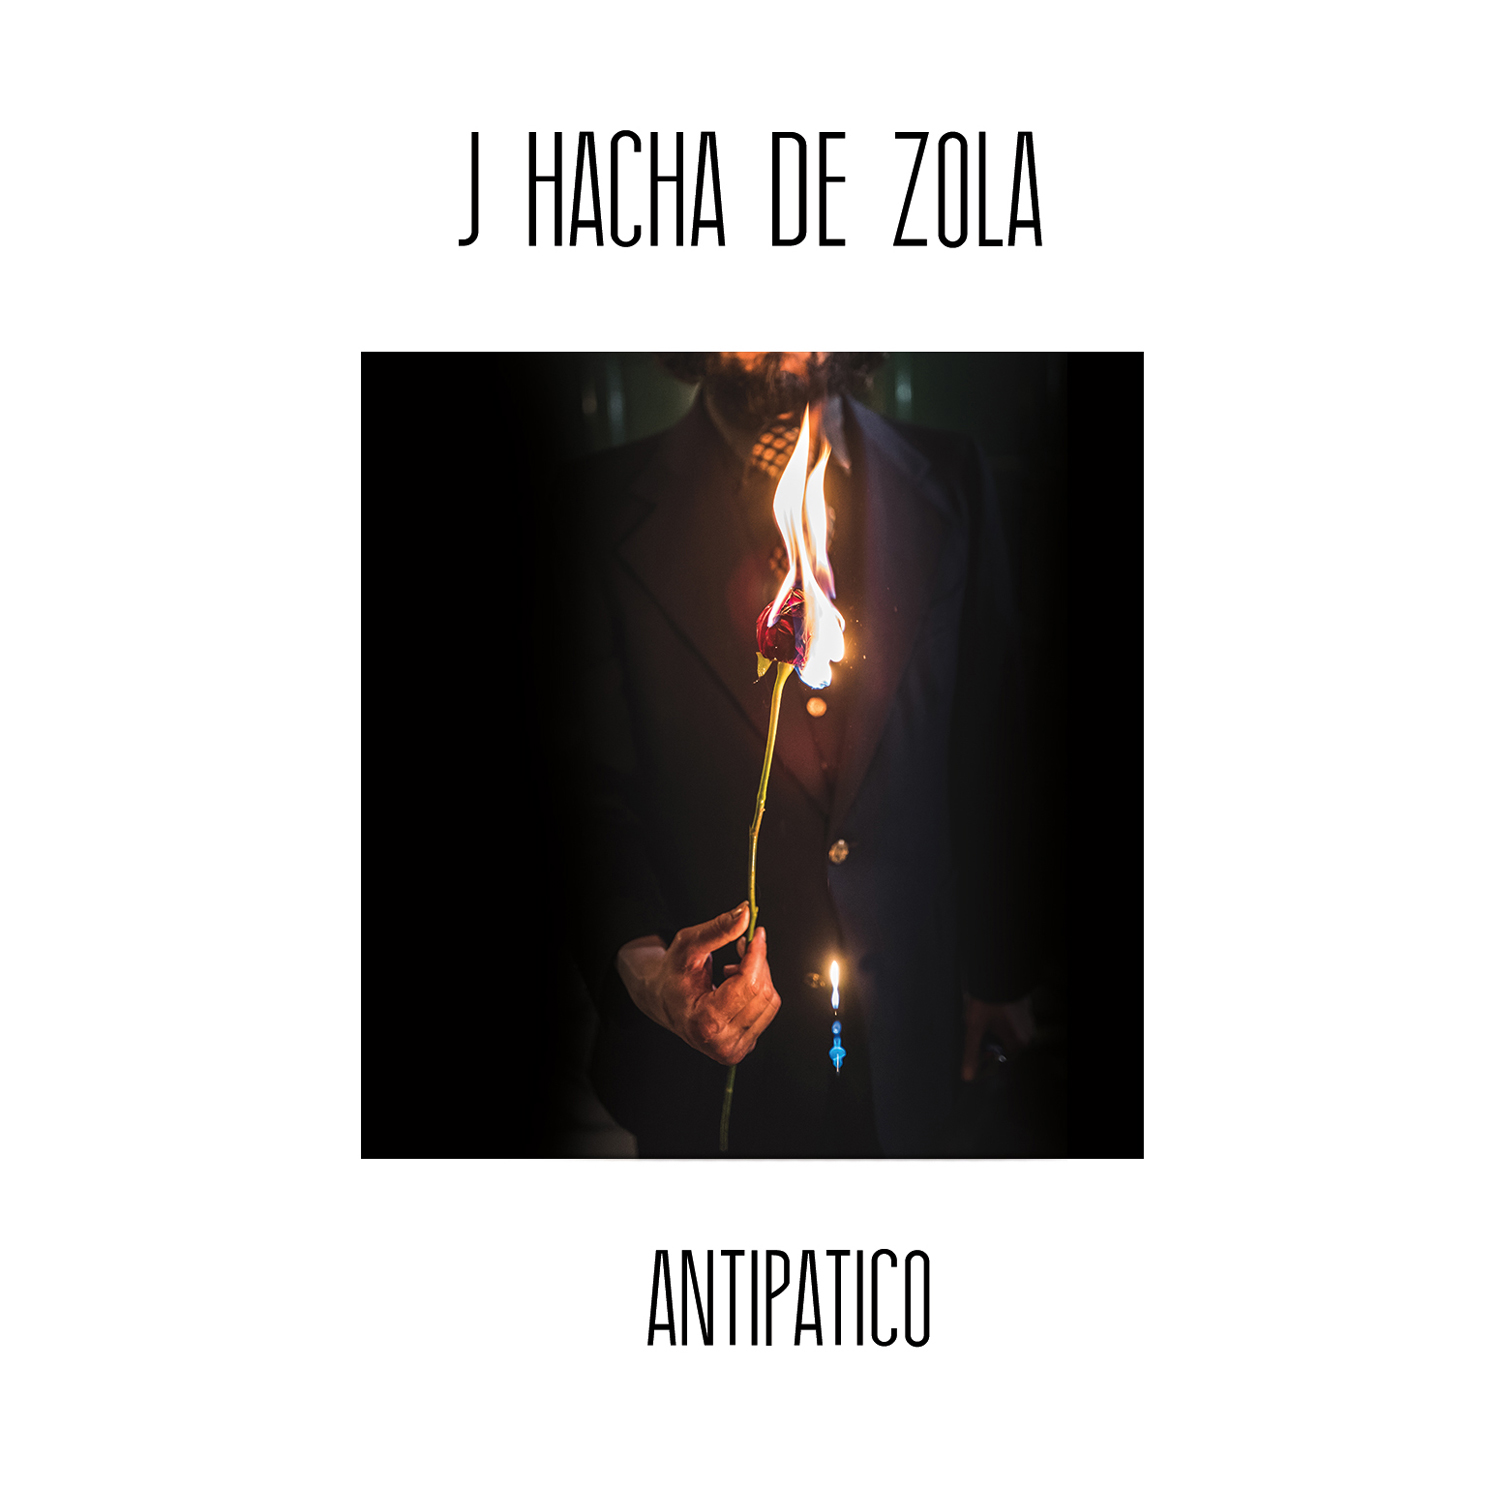 Antipacito - J Hacha de Zola